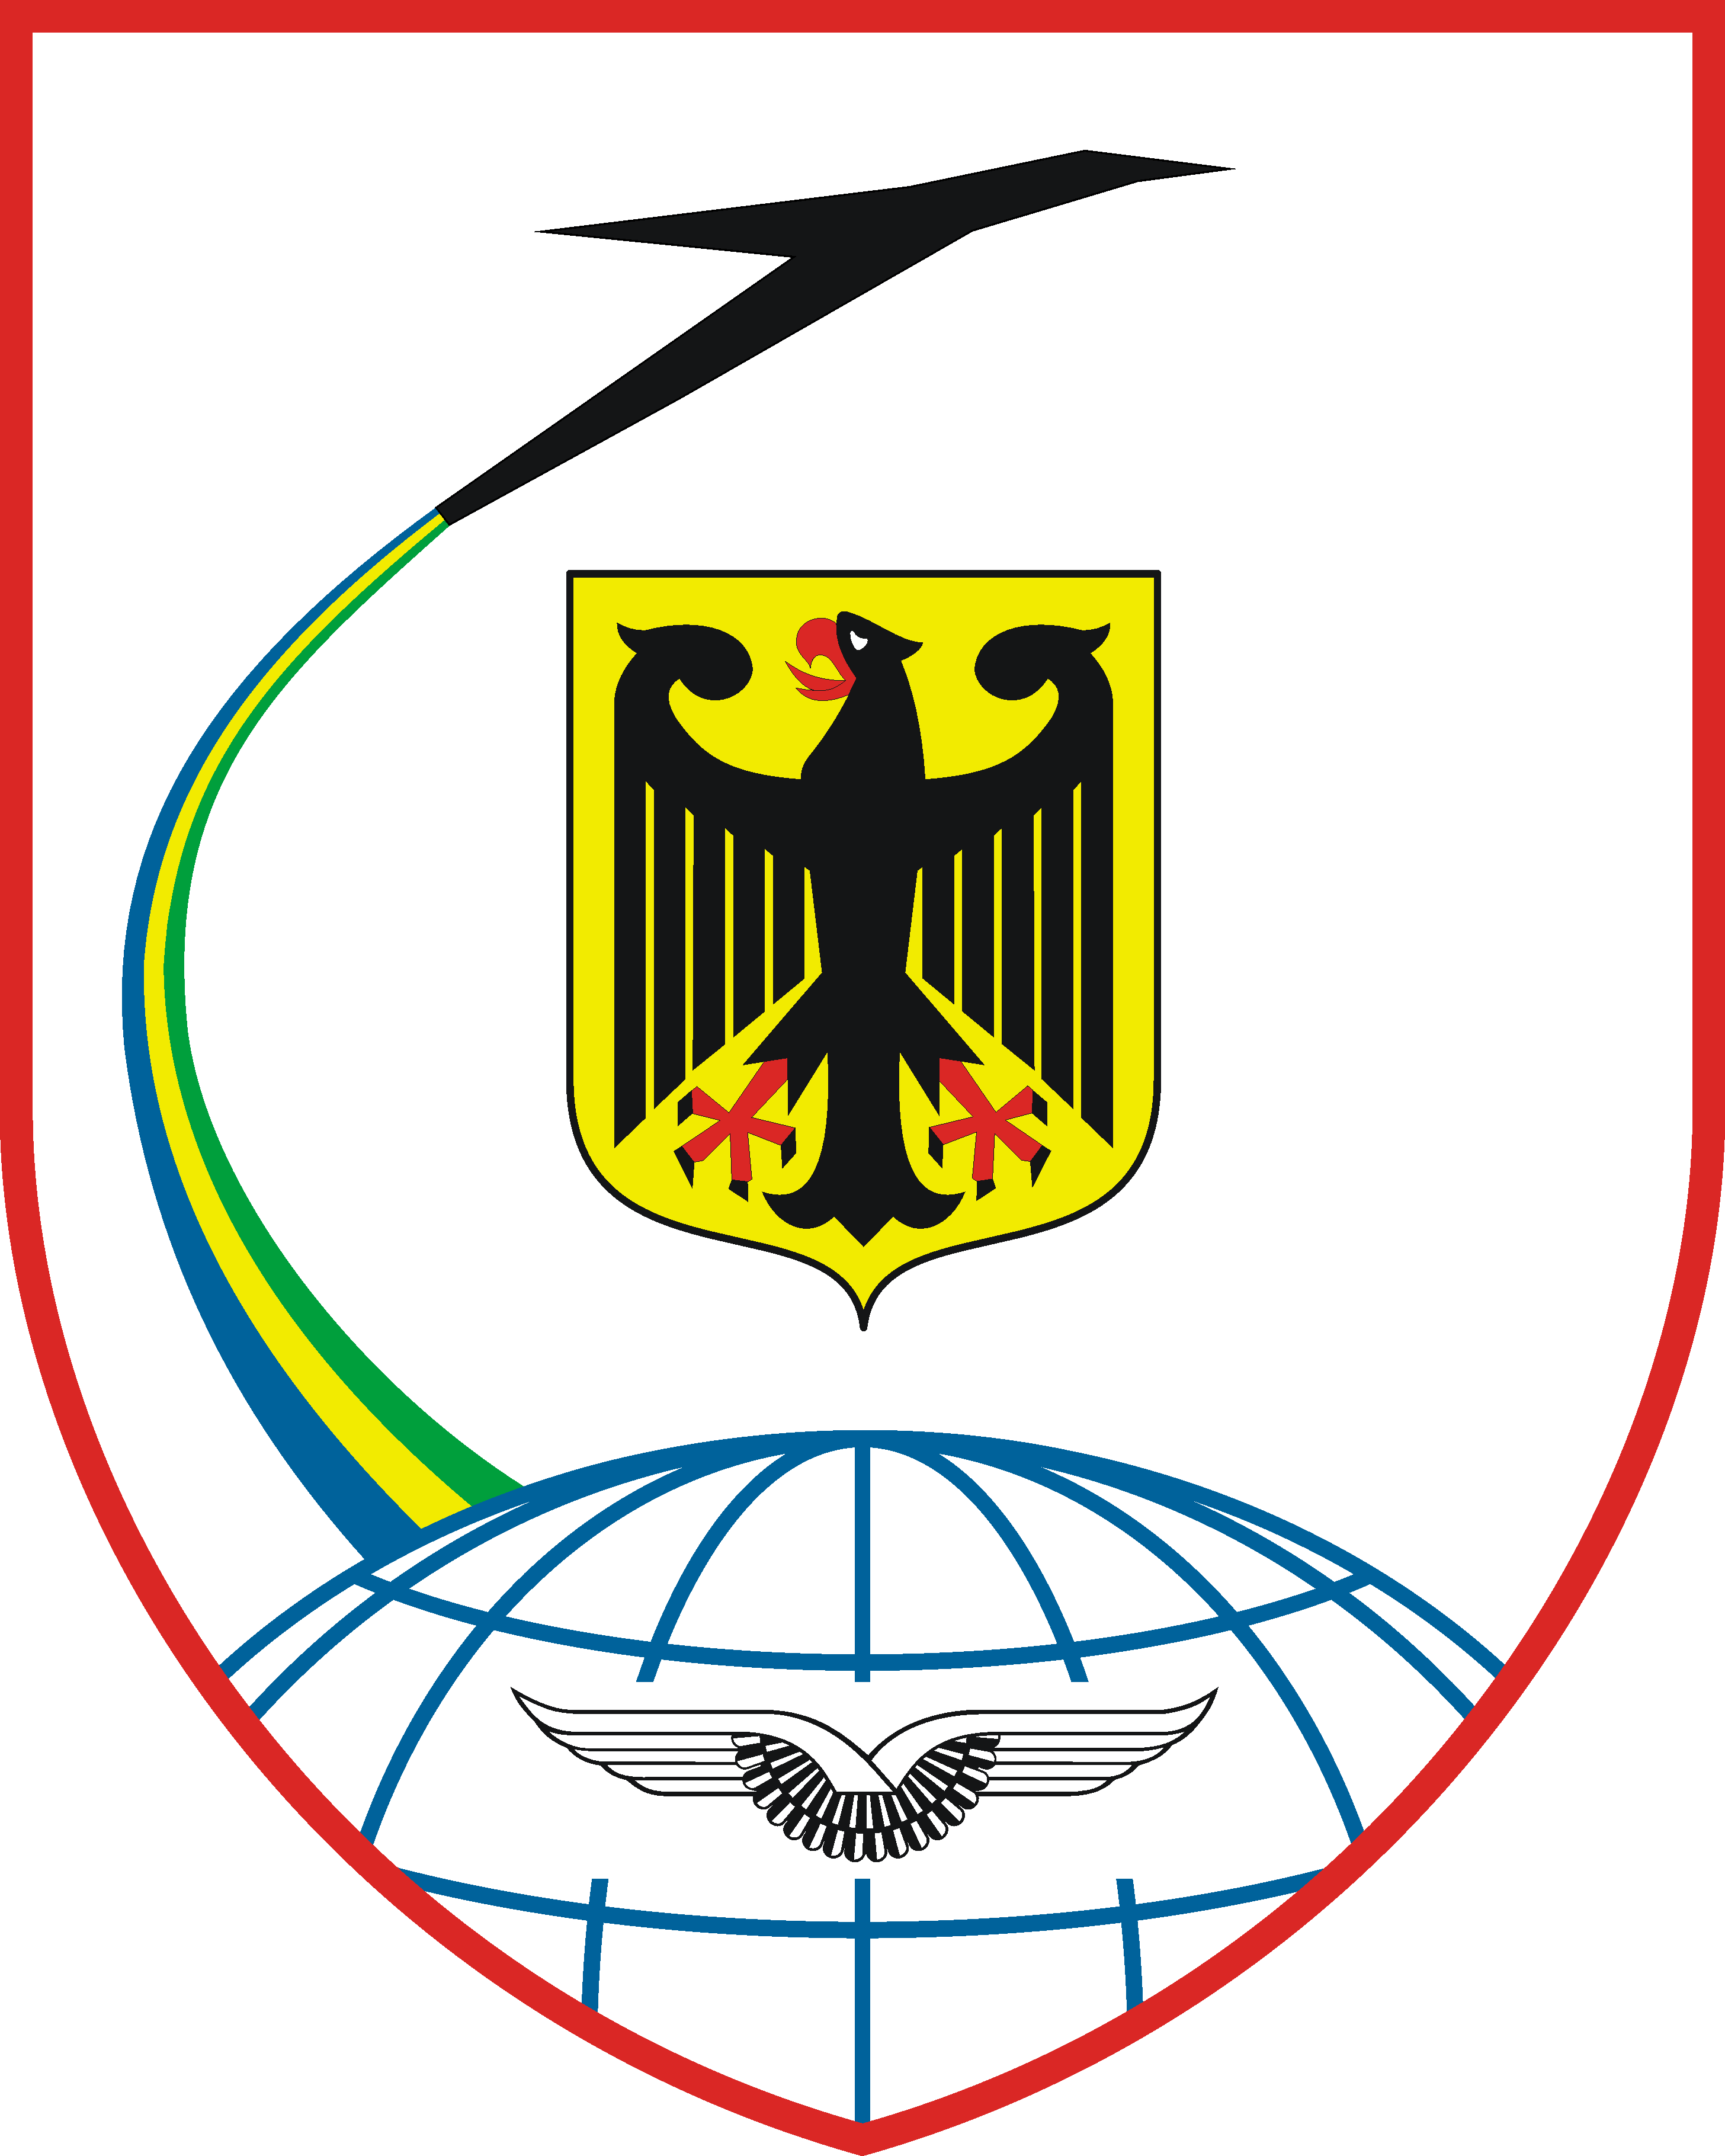 Luftfahrtamt der Bundeswehr - 
German Military Aviation Authority